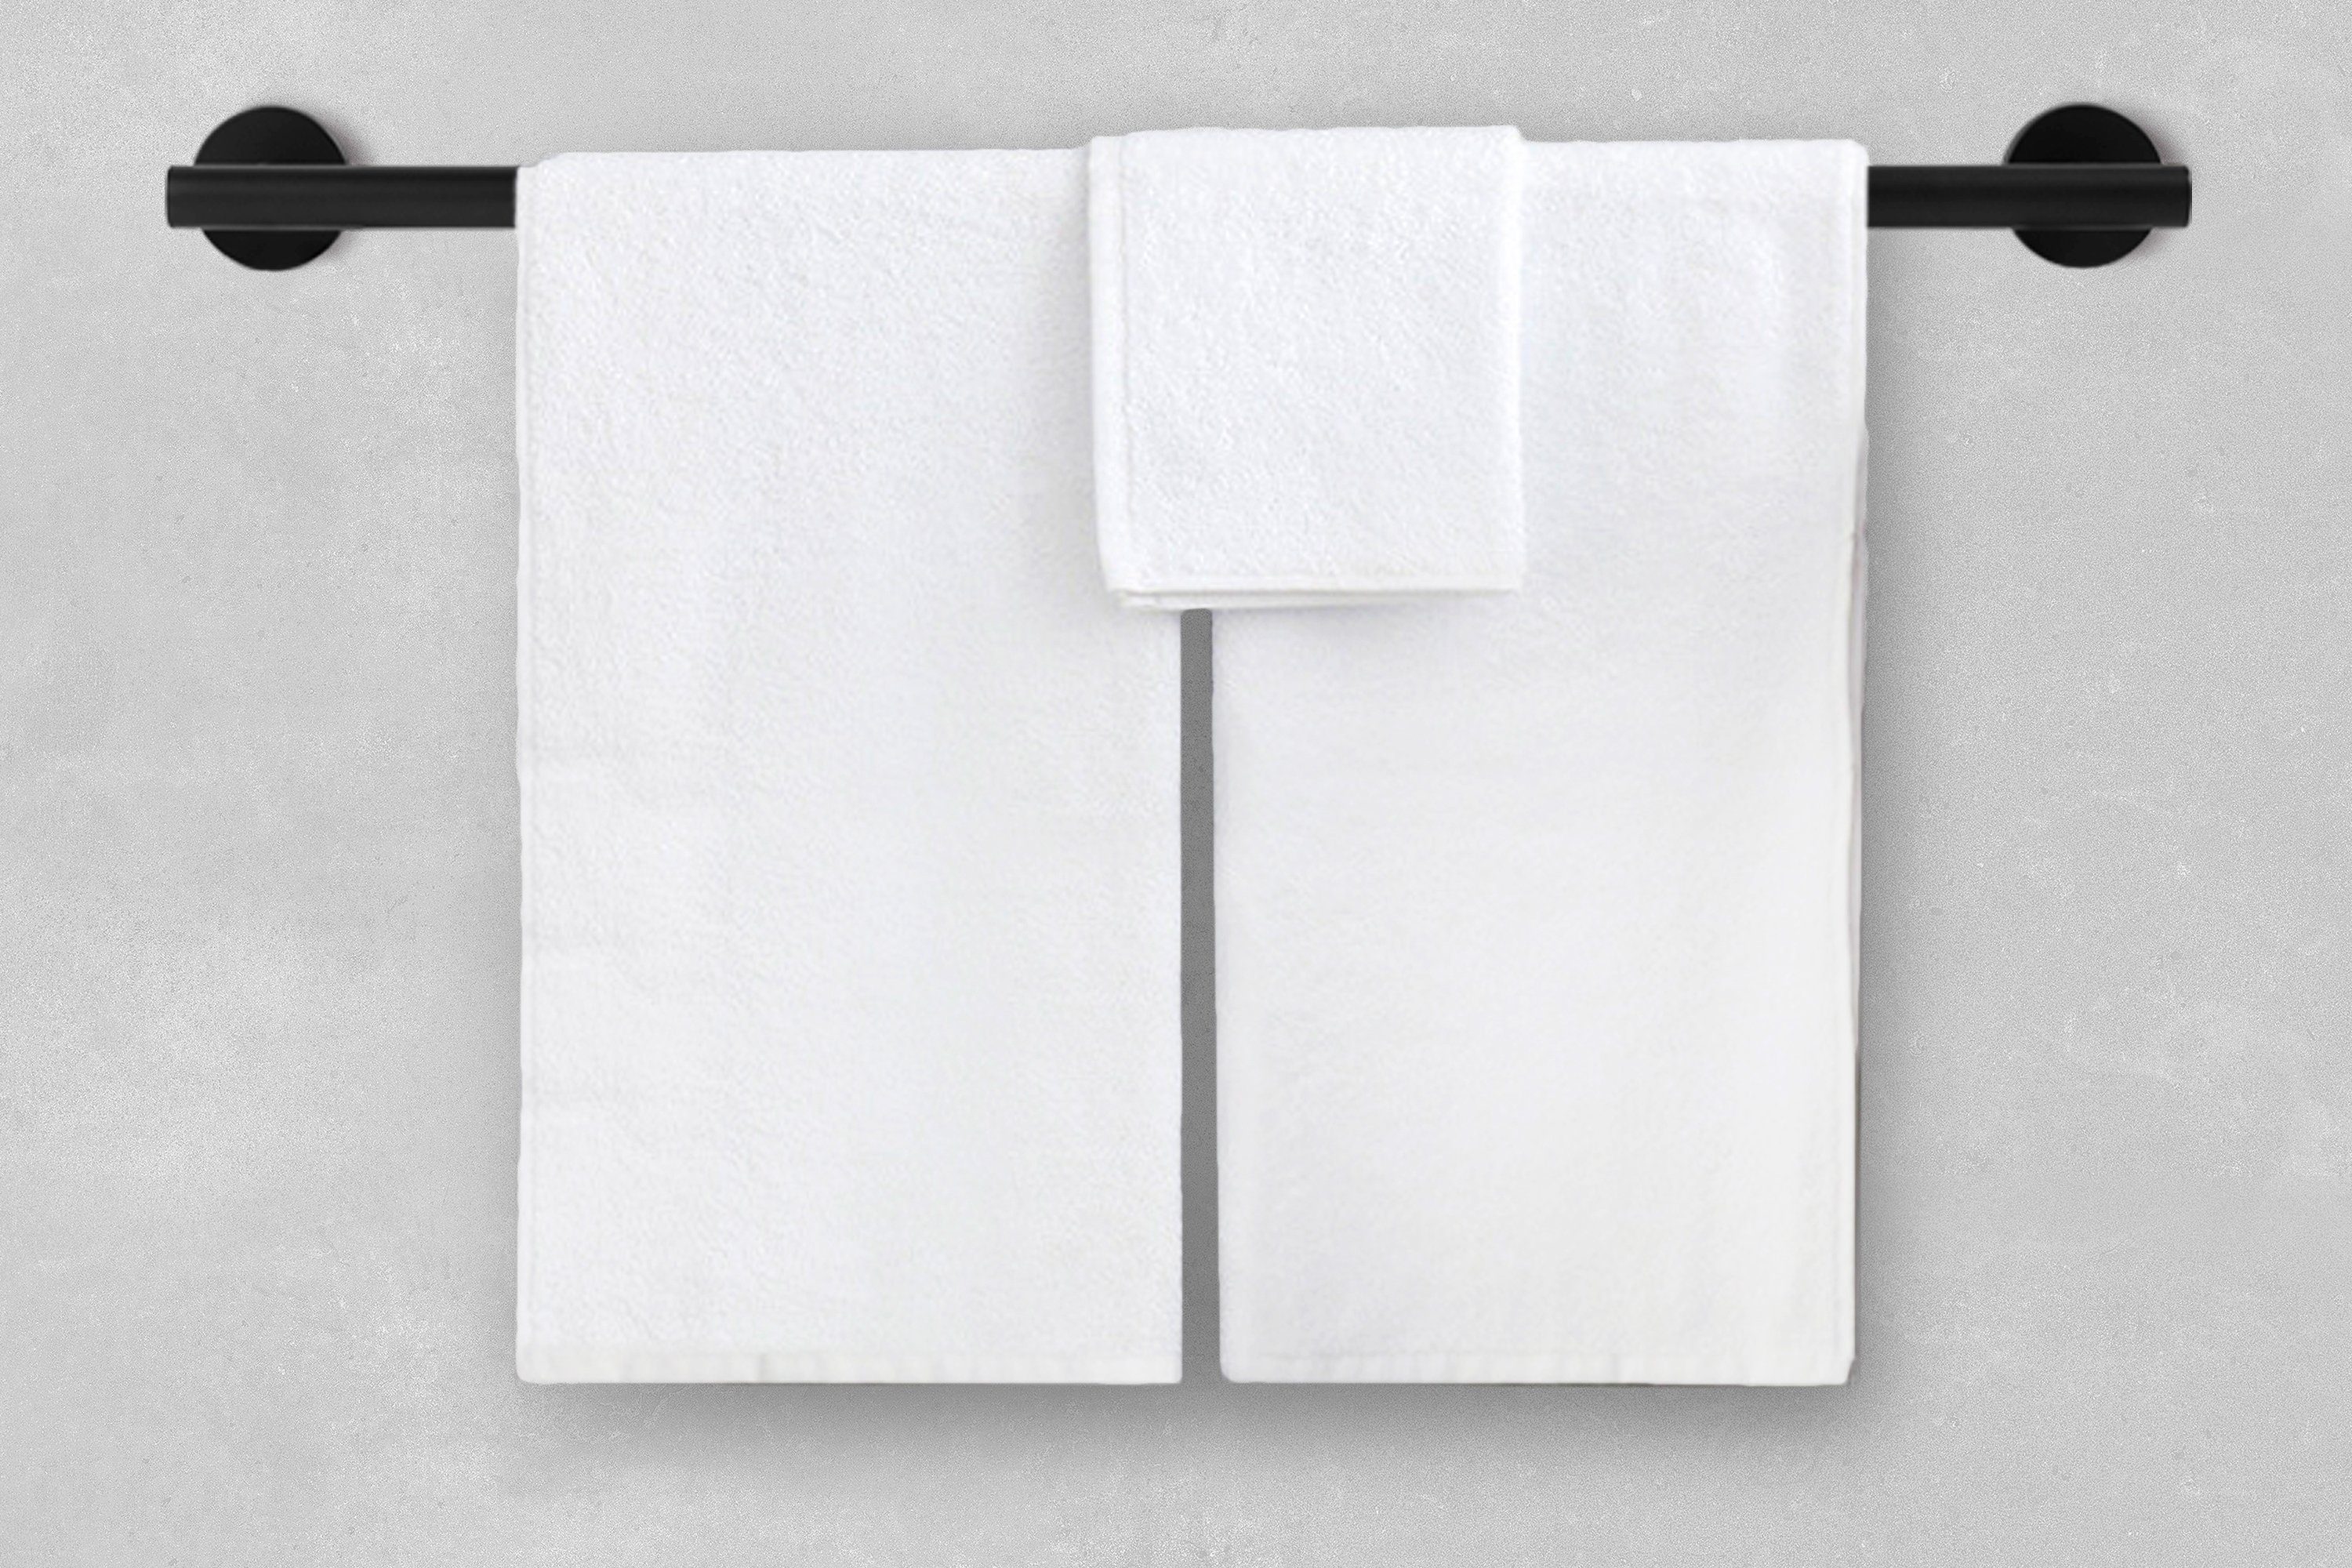 Schwarz Handtuchstange Halterung Ambrosya Handtuch Halter Bad WC Badetuchhalter aus Edelstahl Handtuchhaken Handtuchhalter Wandmontage,